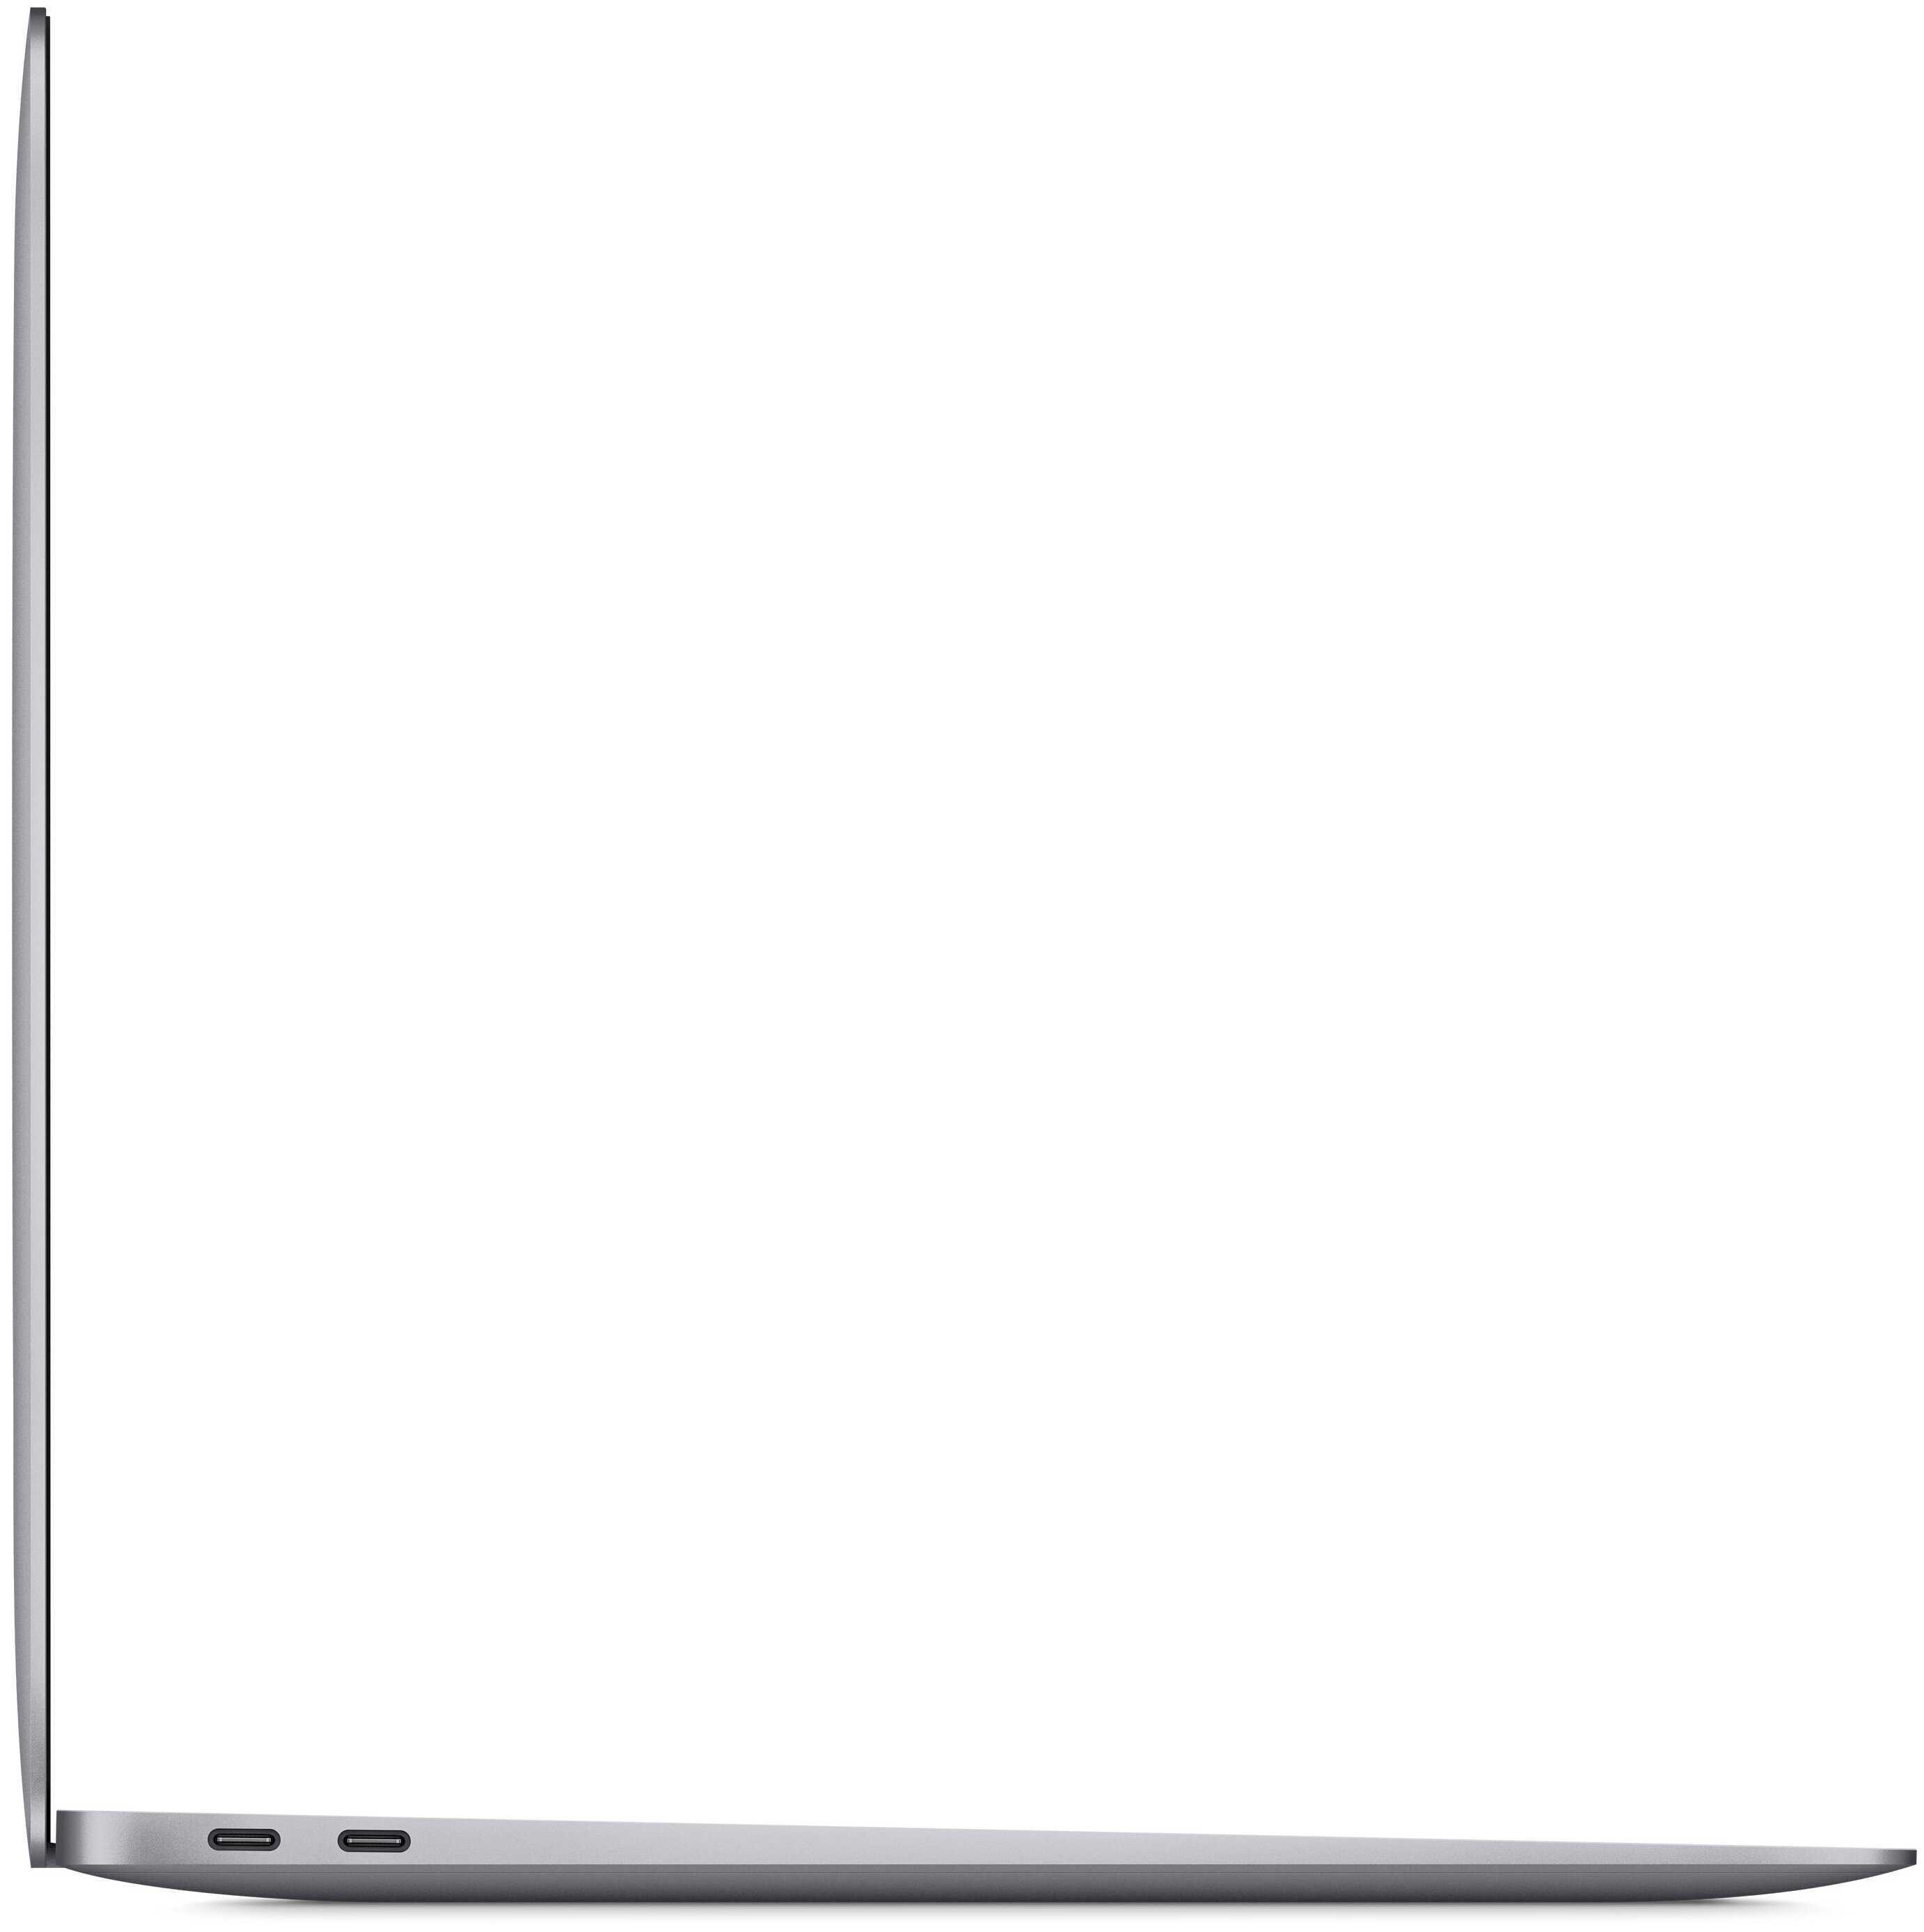 Подробное сравнение Huawei MateBook 14 с Apple Macbook Air M1, 2020: тесты экранов, звука, автономности, производительности в играх и приложениях